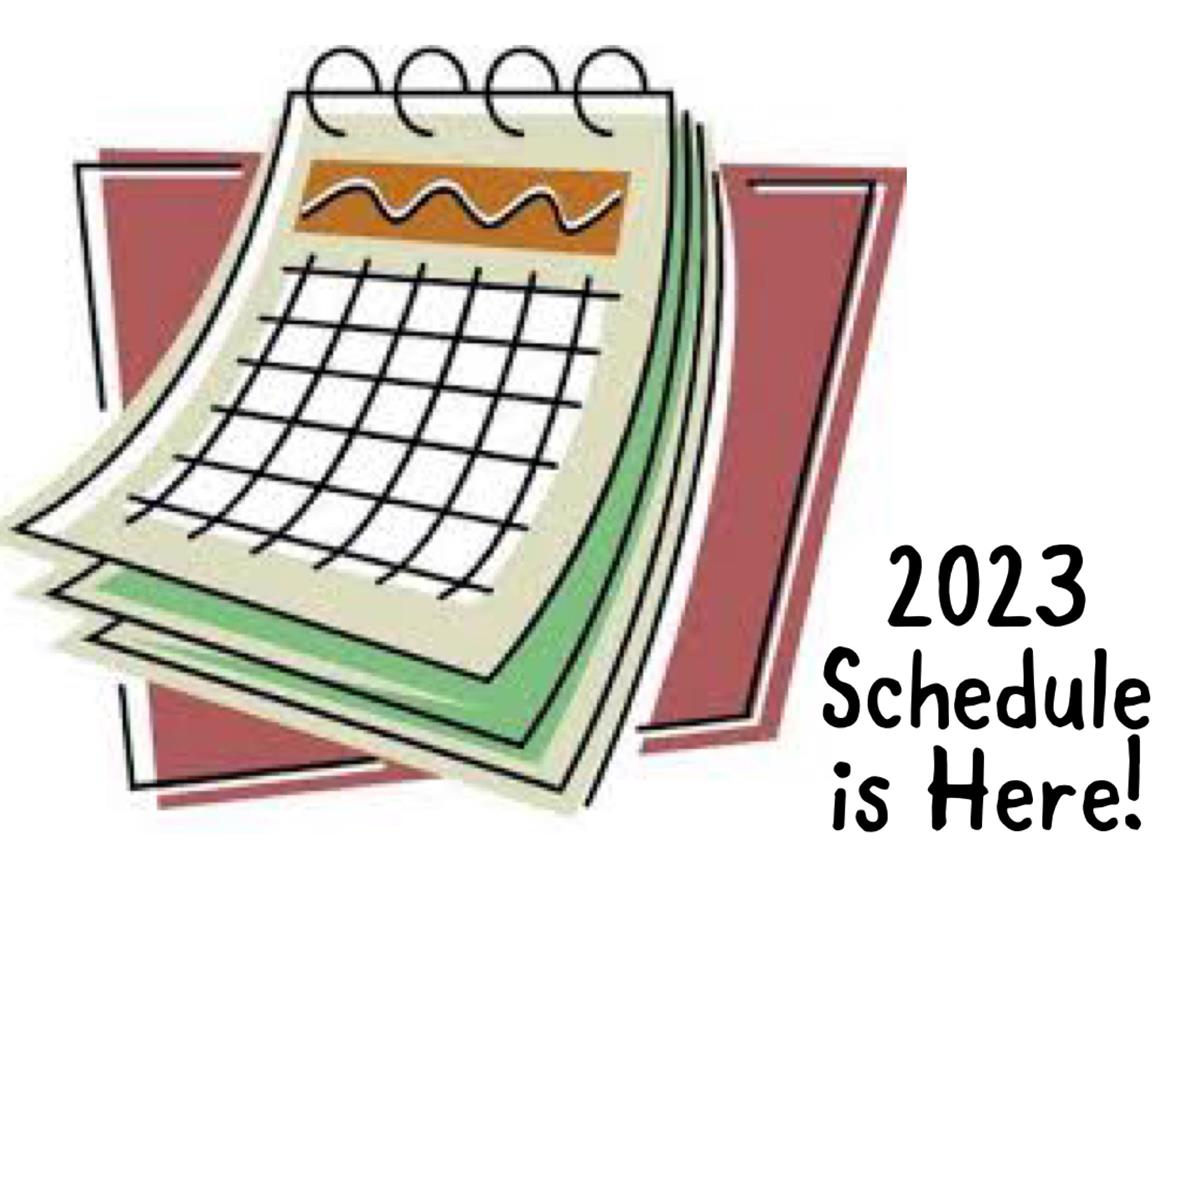 2023 Schedule is Here!